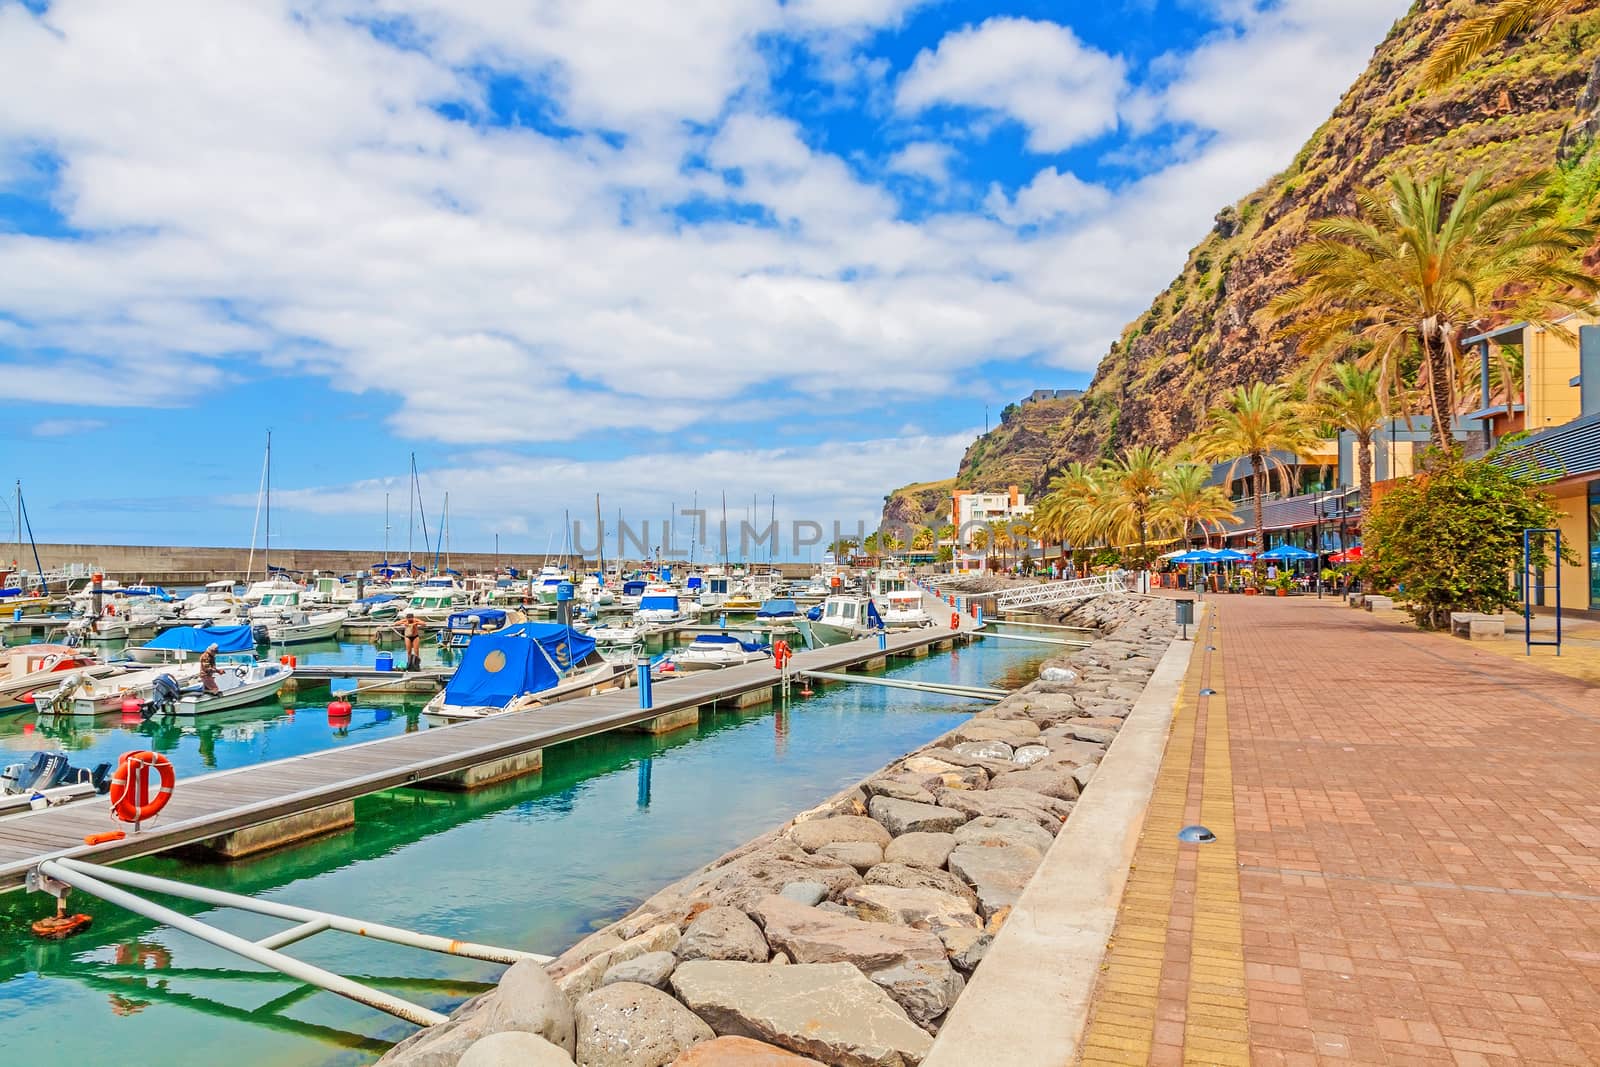 Calheta, Madeira by aldorado